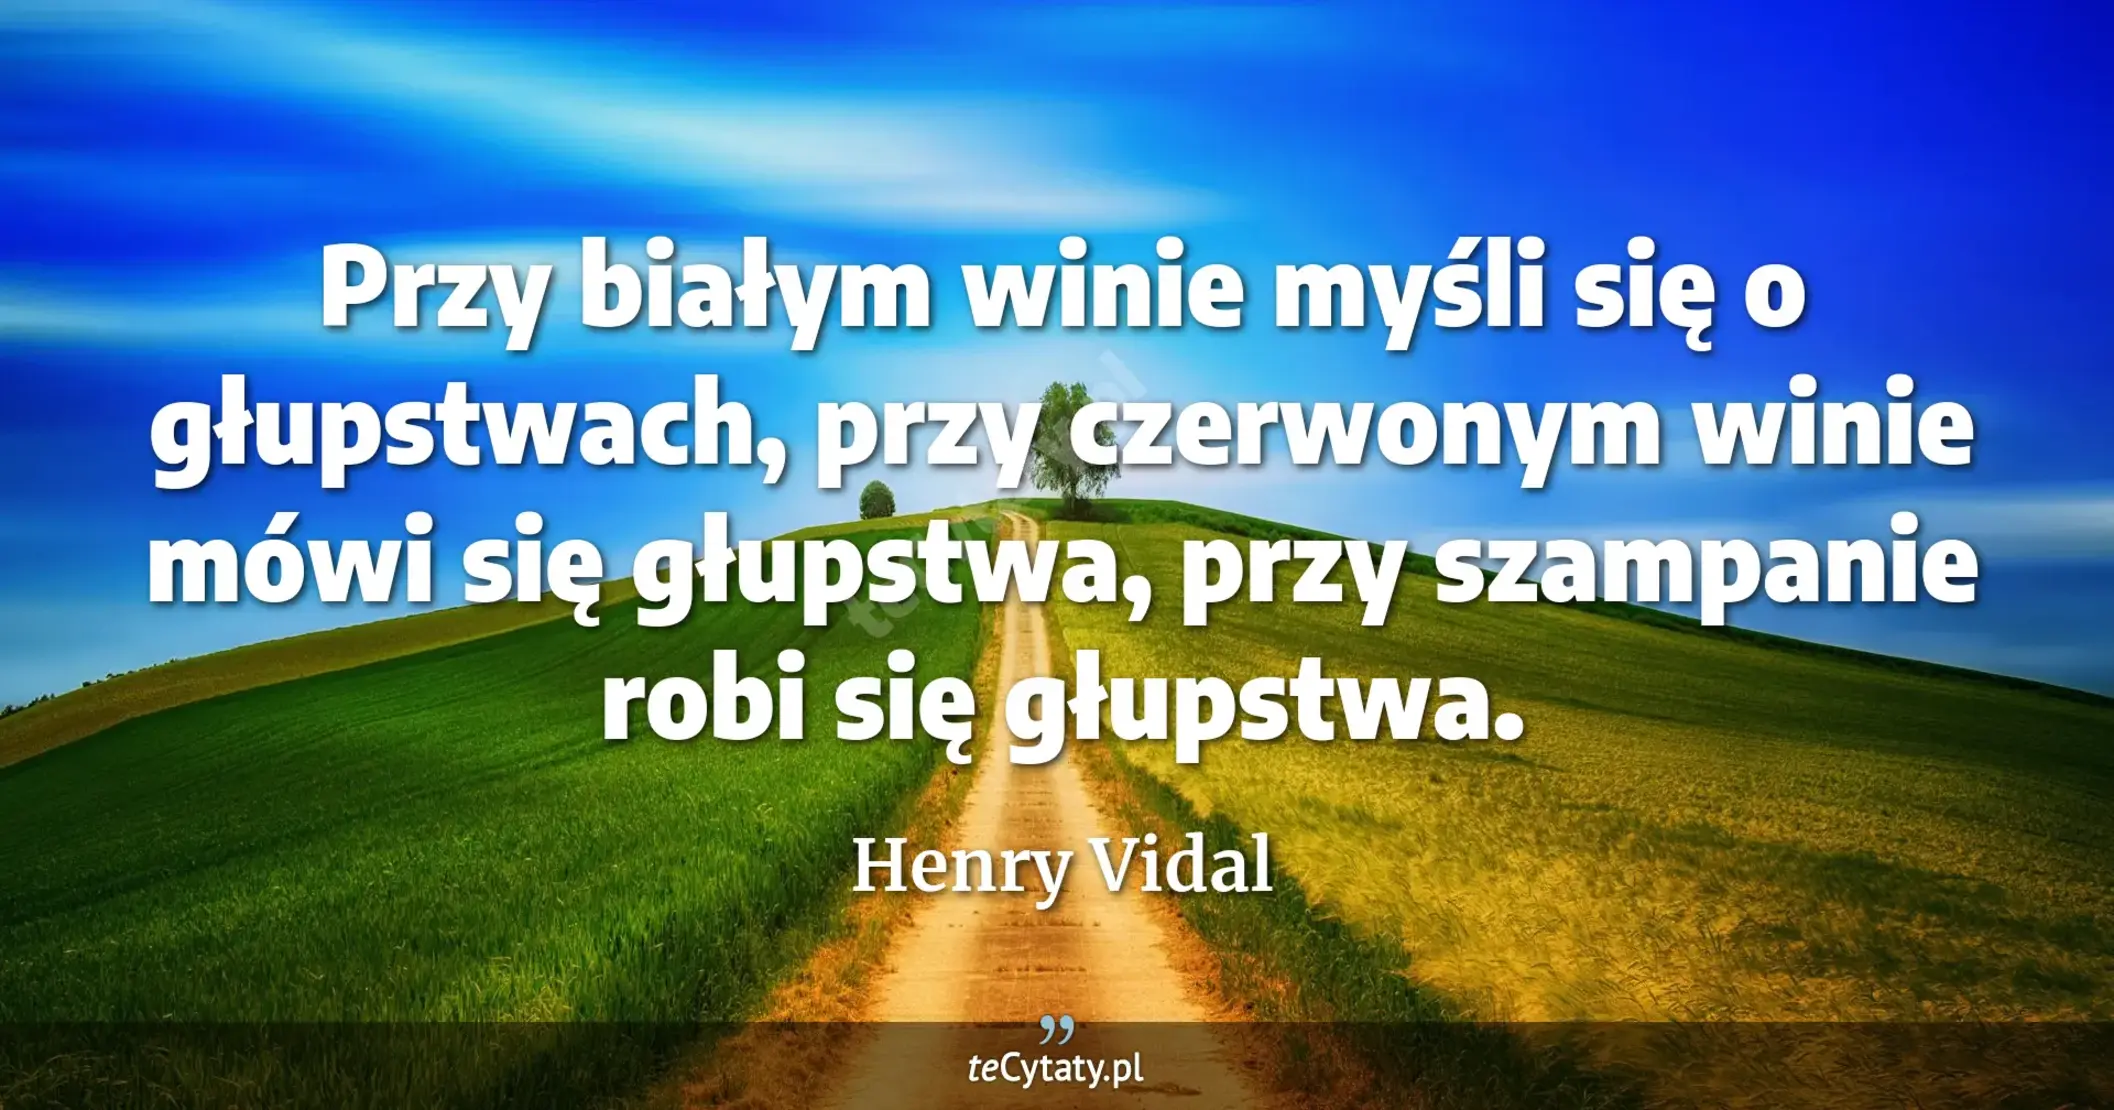 Przy białym winie myśli się o głupstwach, przy czerwonym winie mówi się głupstwa, przy szampanie robi się głupstwa. - Henry Vidal